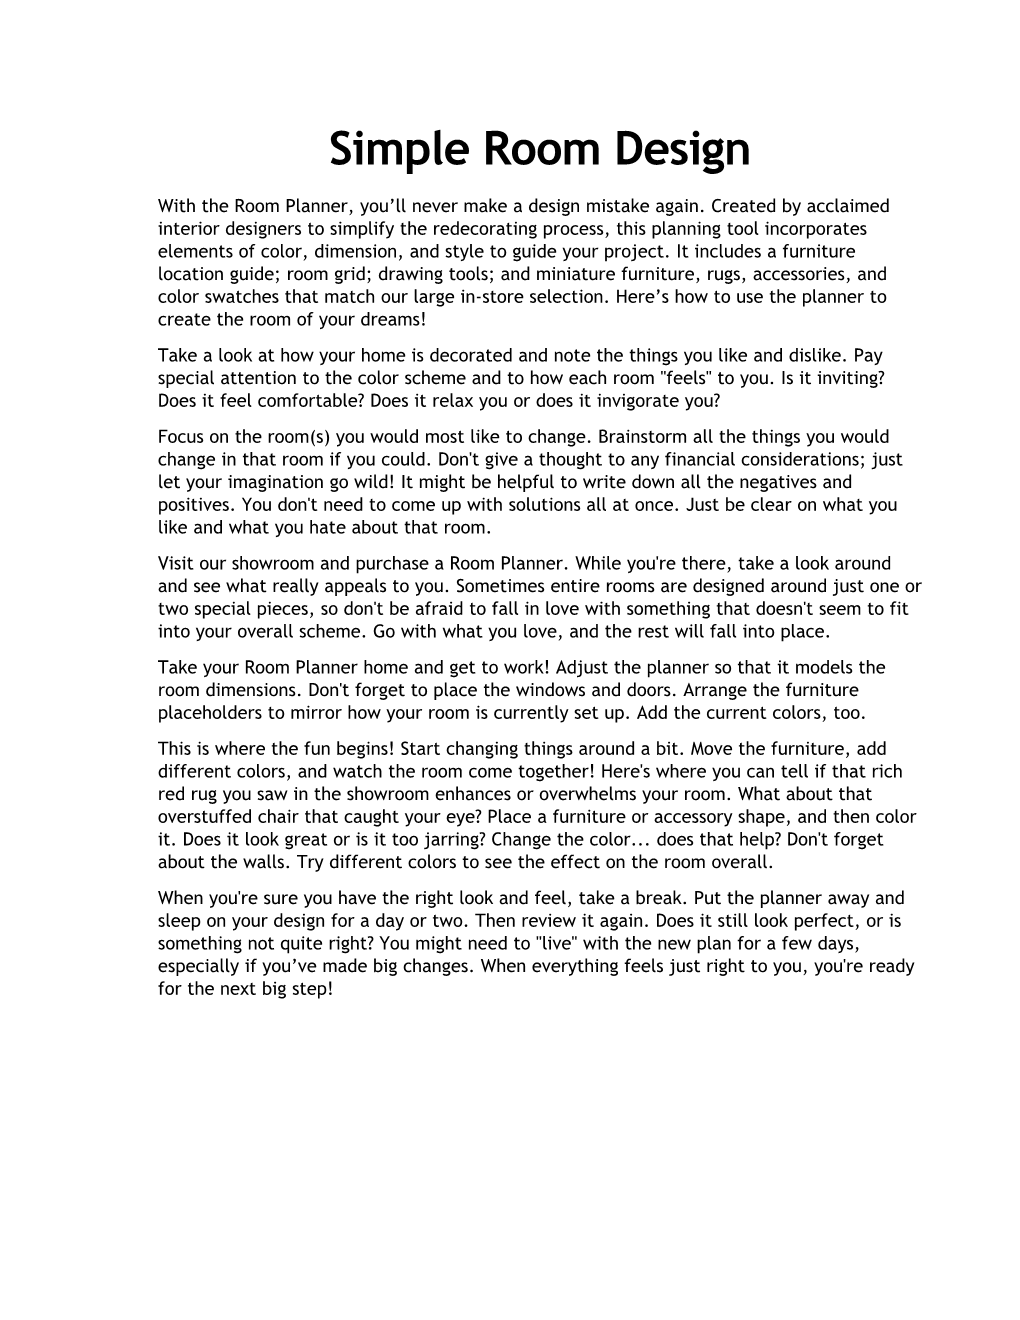 Simple Roomdesign